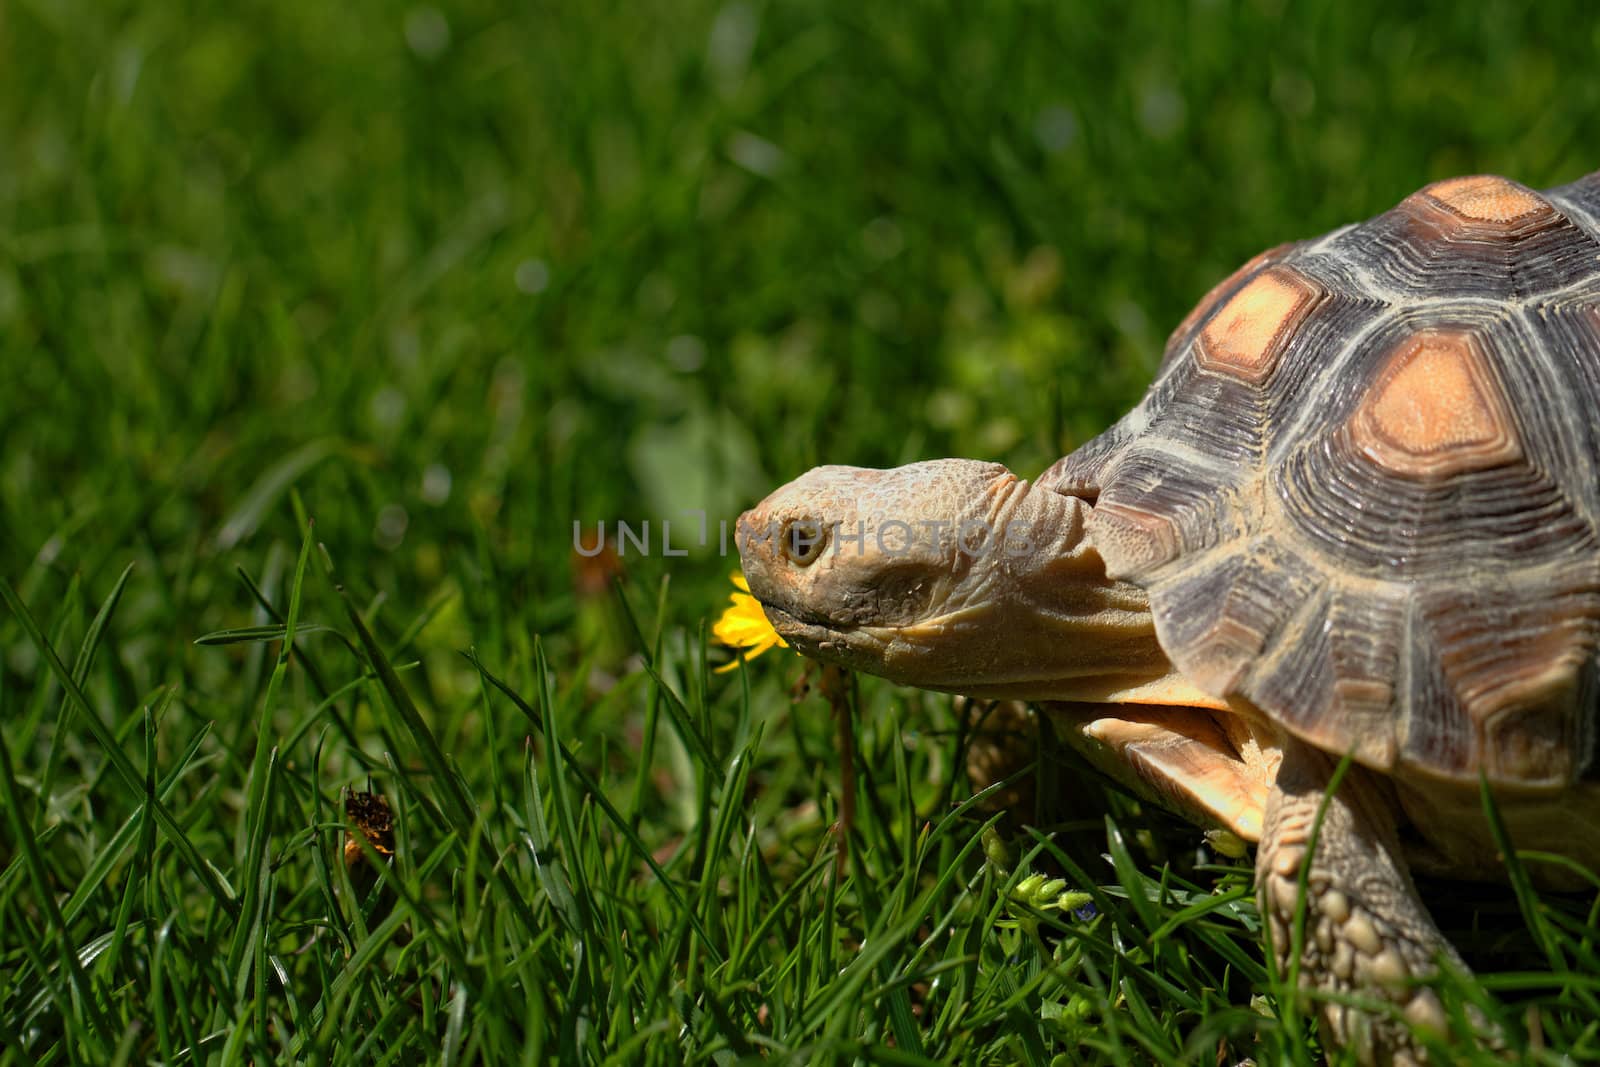 African Spurred Tortoise (Geochelone sulcata) in the garden